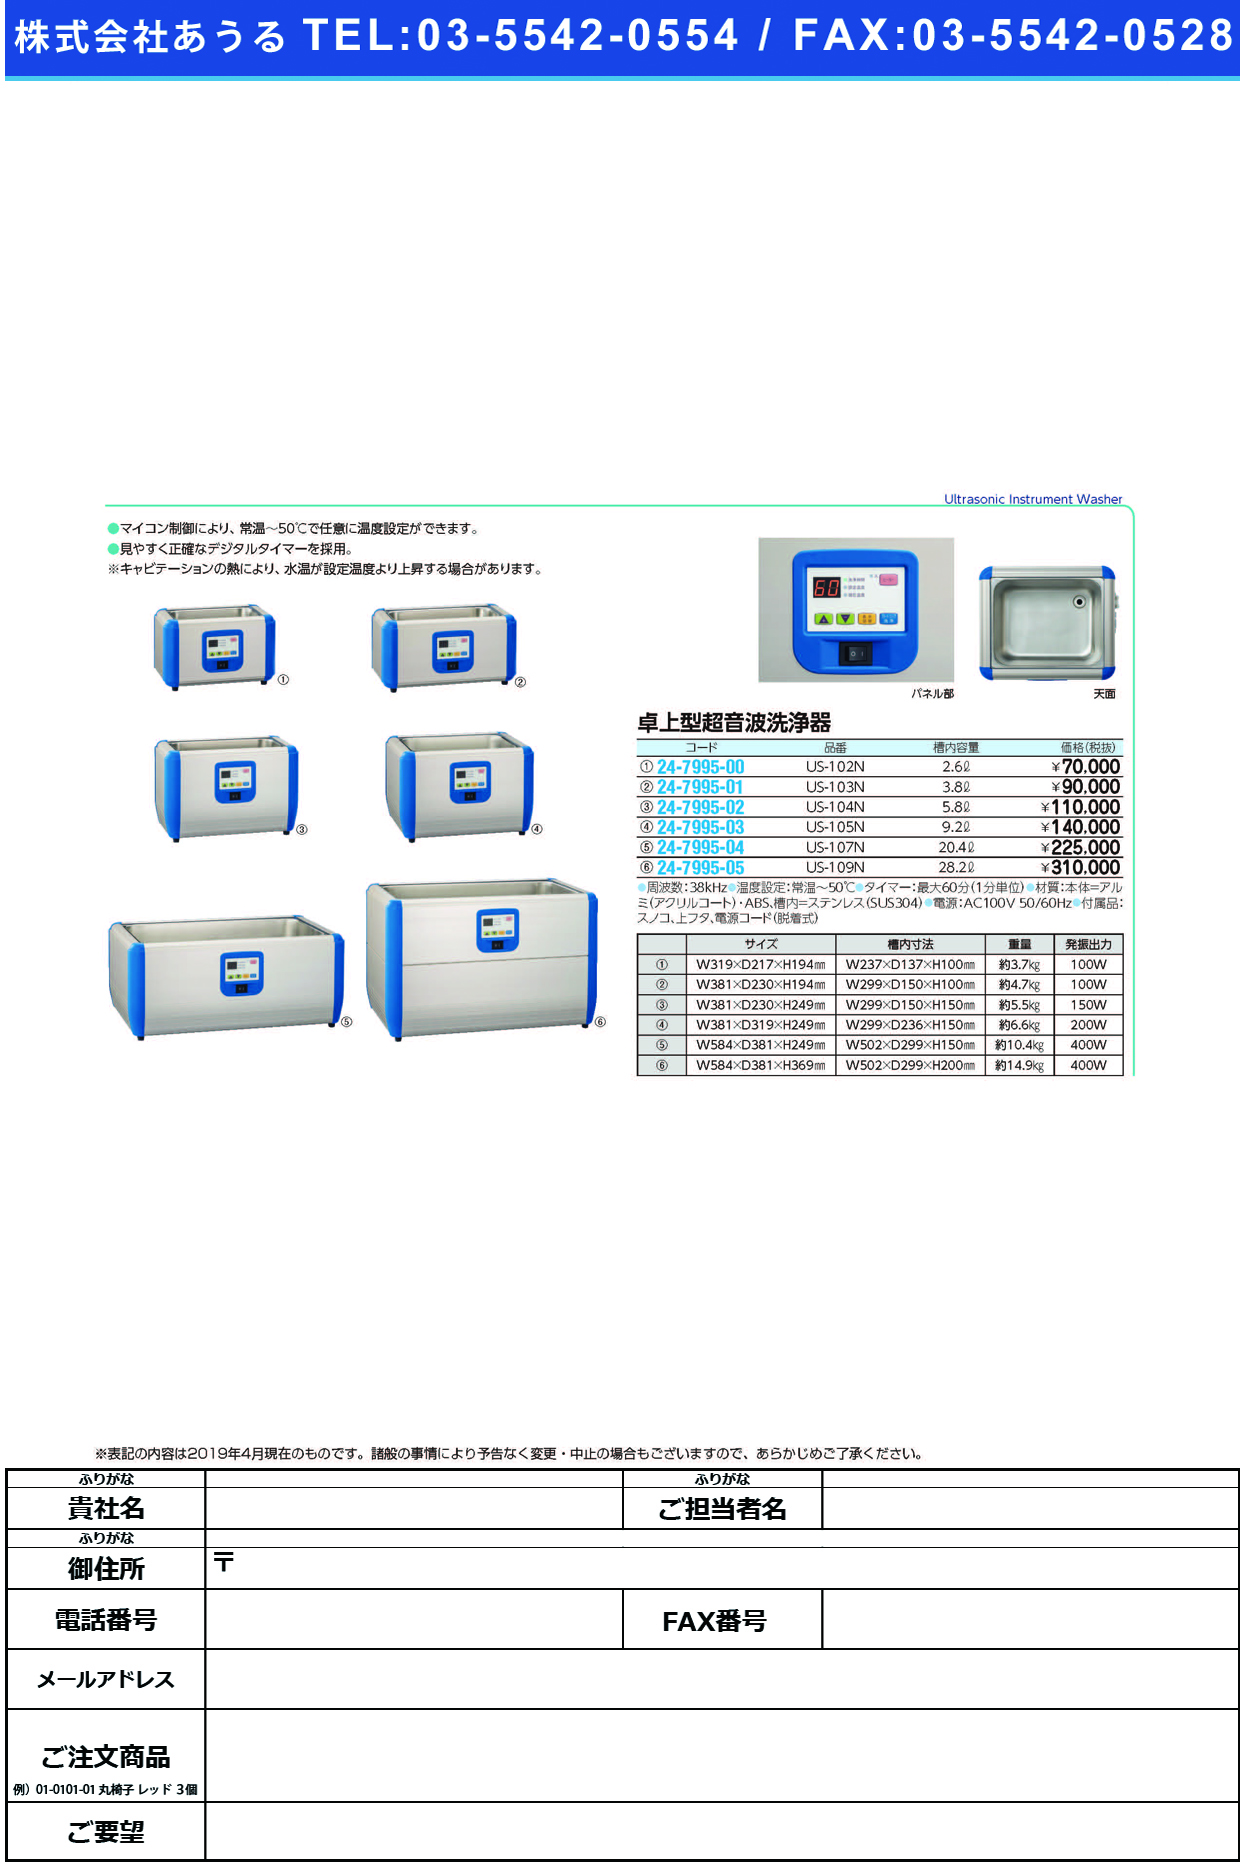 (24-7995-03)卓上型超音波洗浄器US-105N ﾀｸｼﾞｮｳﾁｮｳｵﾝﾊﾟｾﾝｼﾞｮｳｷ(三商)【1台単位】【2019年カタログ商品】